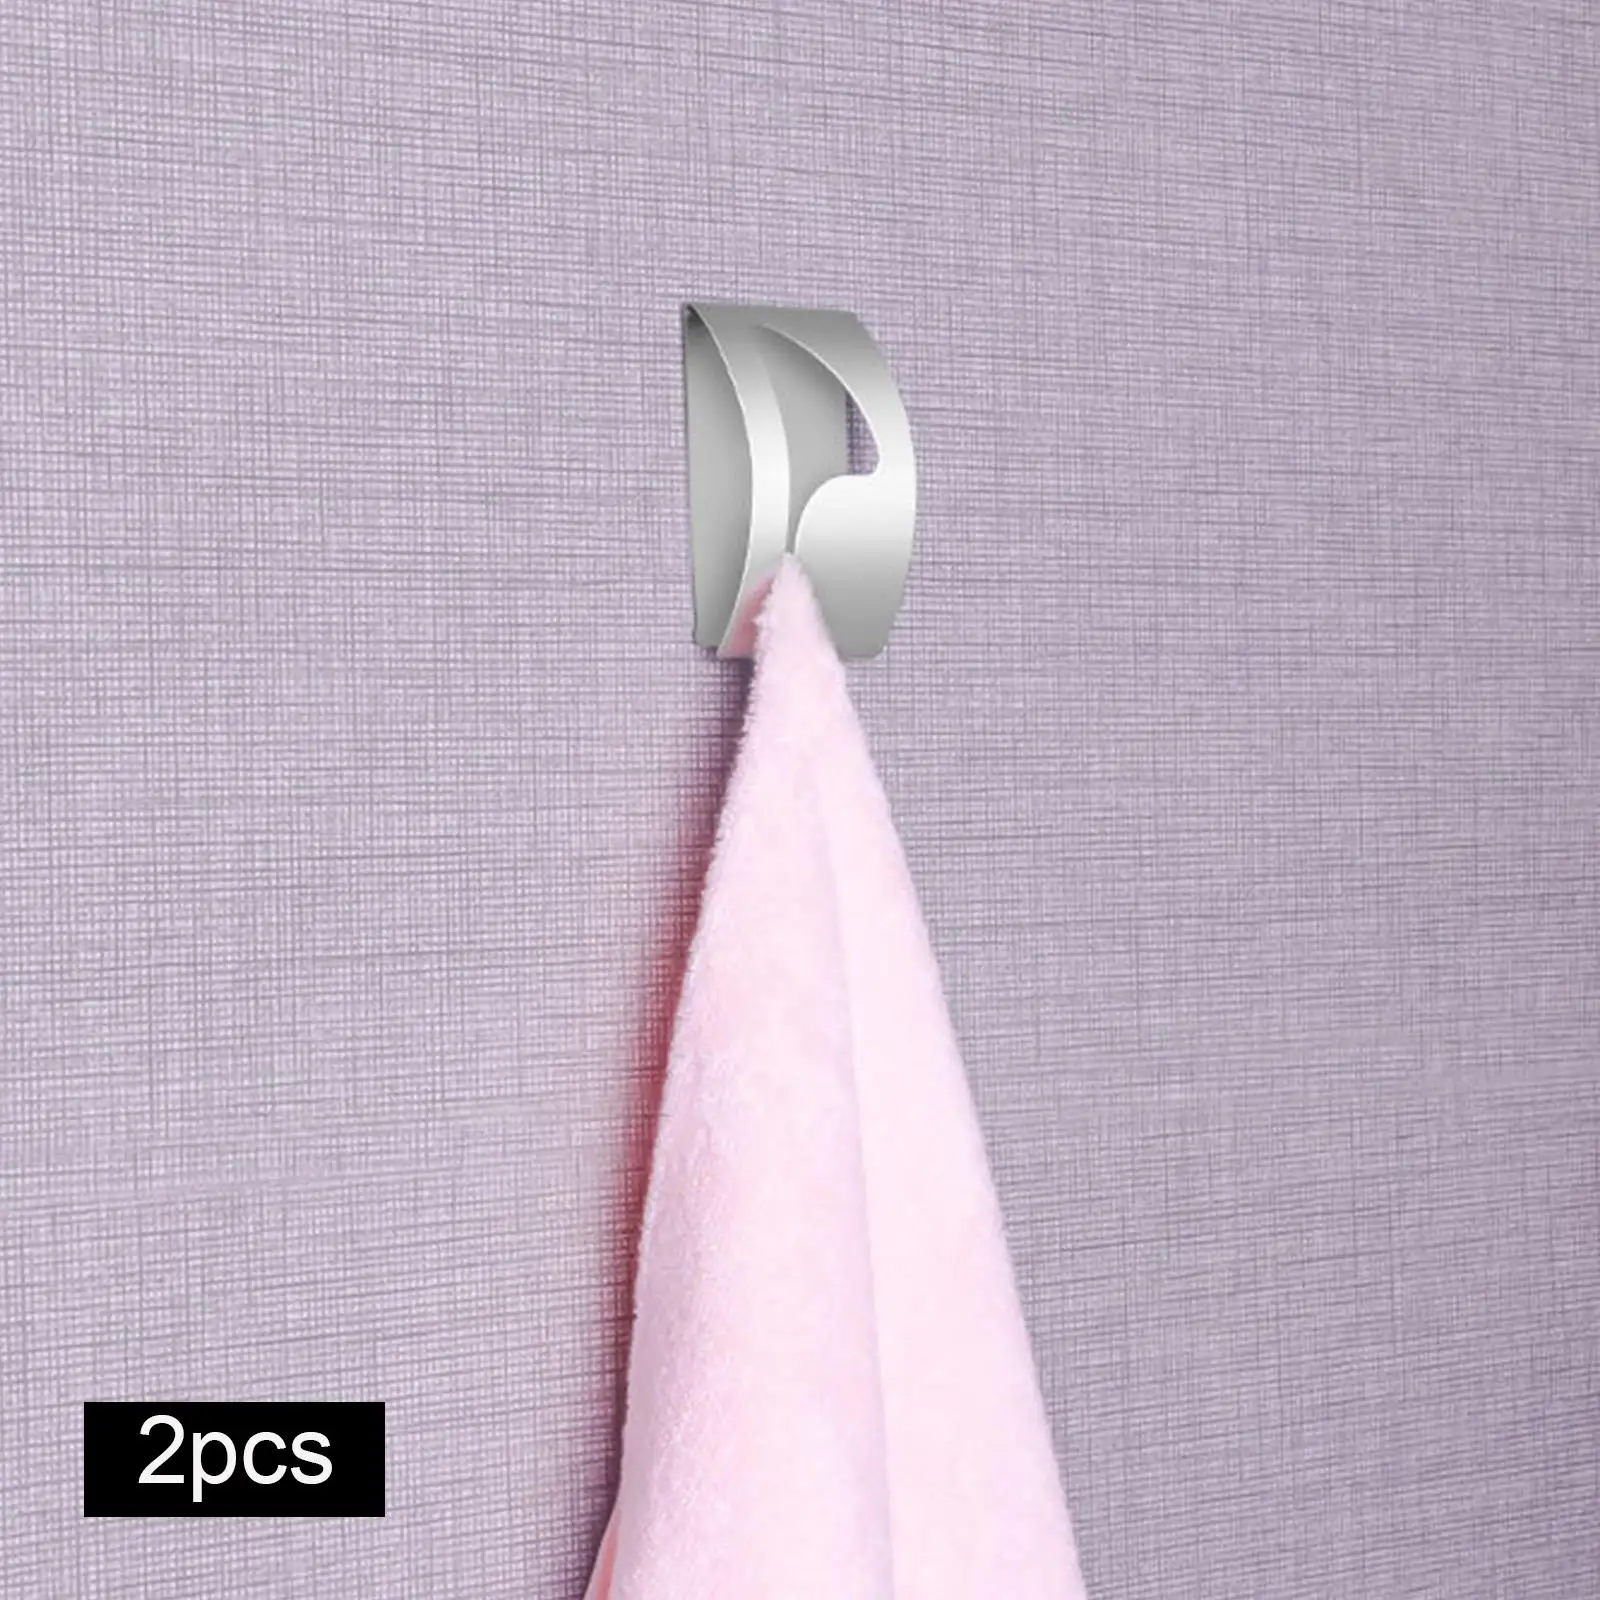 Stainless Hooks Shower Tea Towel Holders Towel Holder Hook for Bathroom Hooks